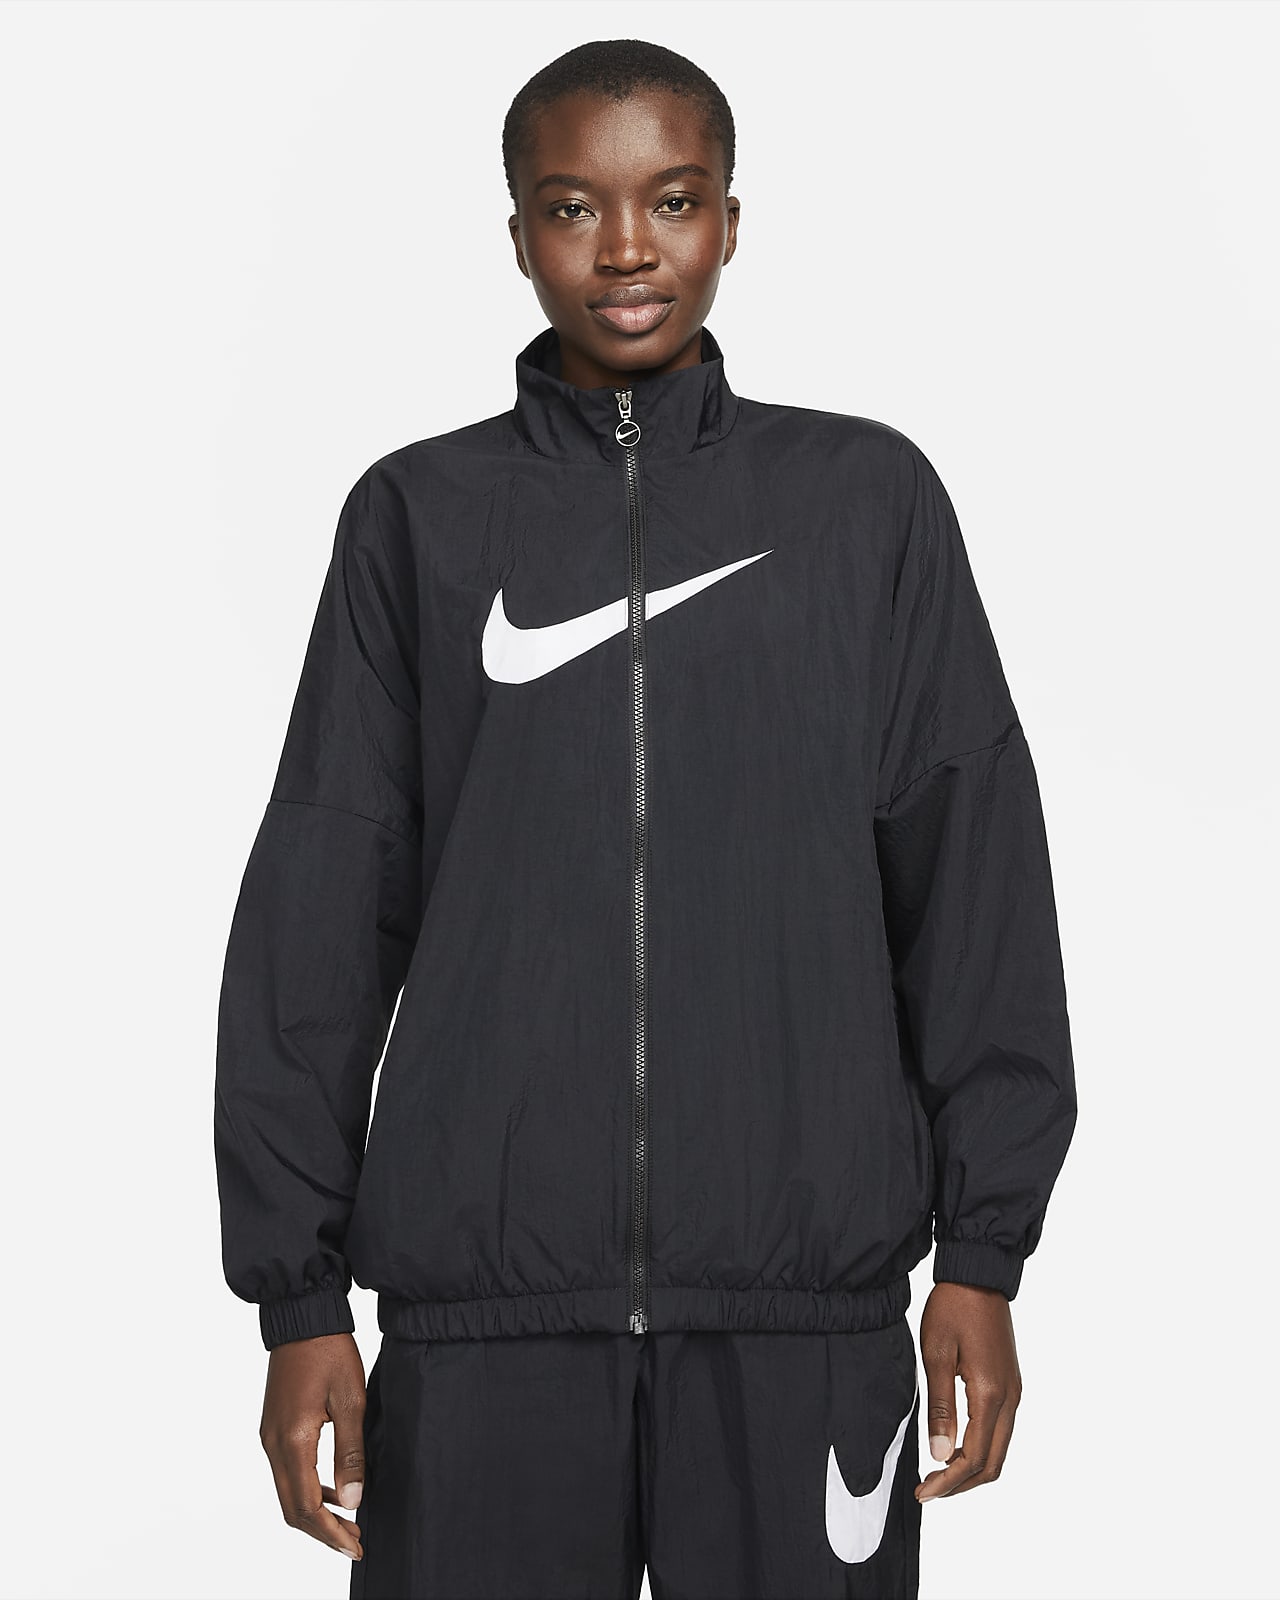 Nike Sportswear Women's Woven Jacket. Nike.com